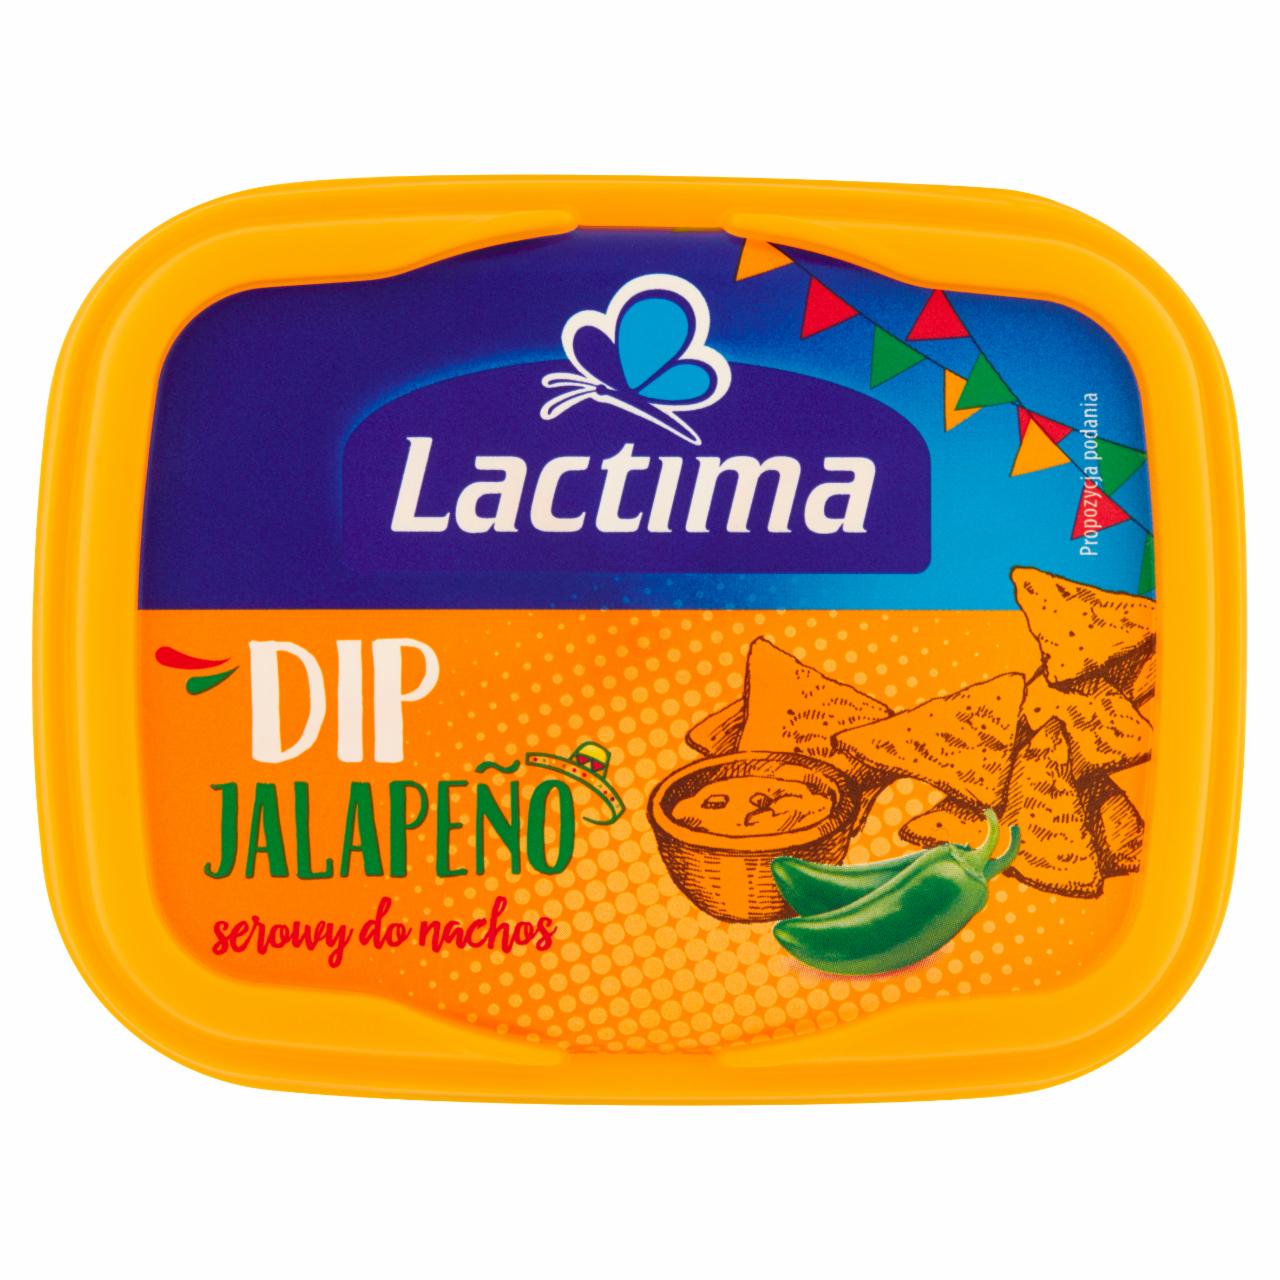 Zdjęcia - Lactima Dip serowy do nachos Jalapeño 150 g